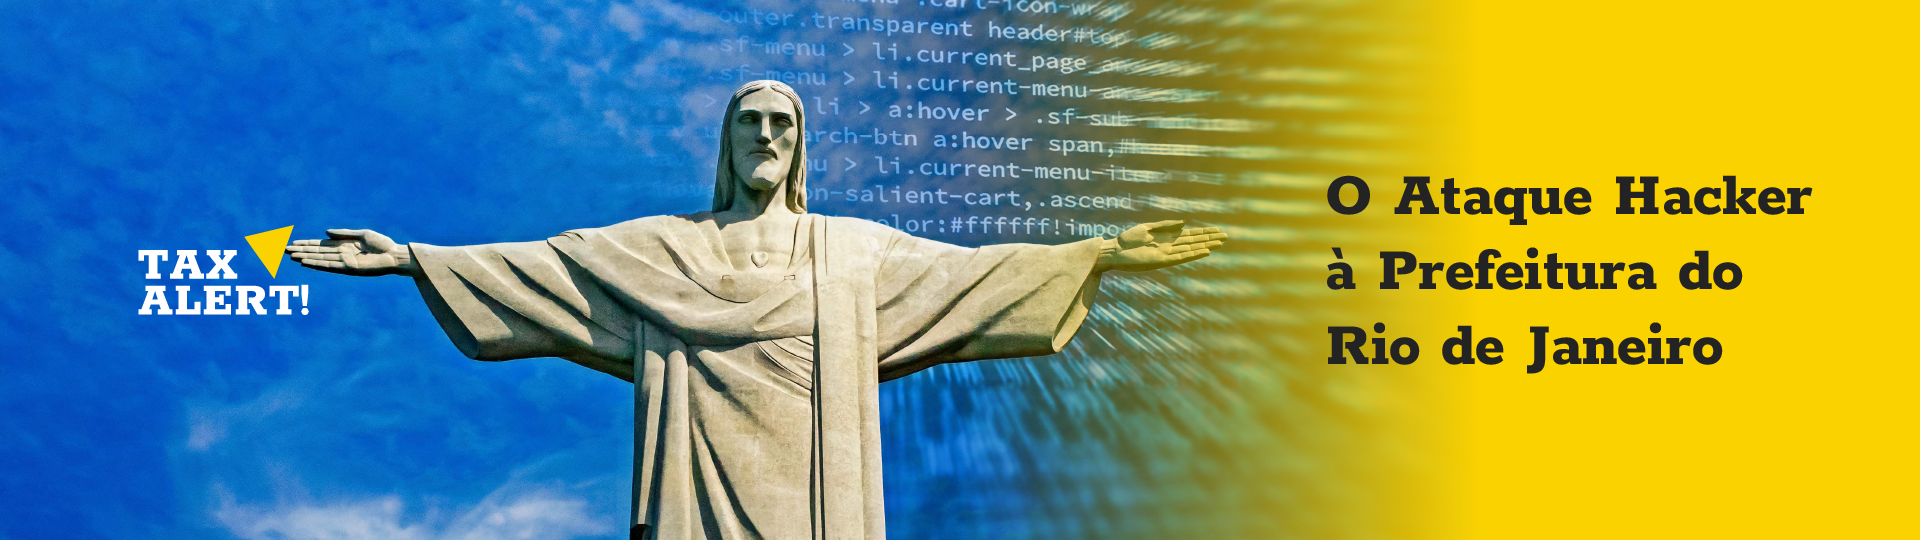 Você está visualizando atualmente O Ataque Hacker à Prefeitura do Rio de Janeiro e o que fazer na falta de emissão de Nota Fiscal